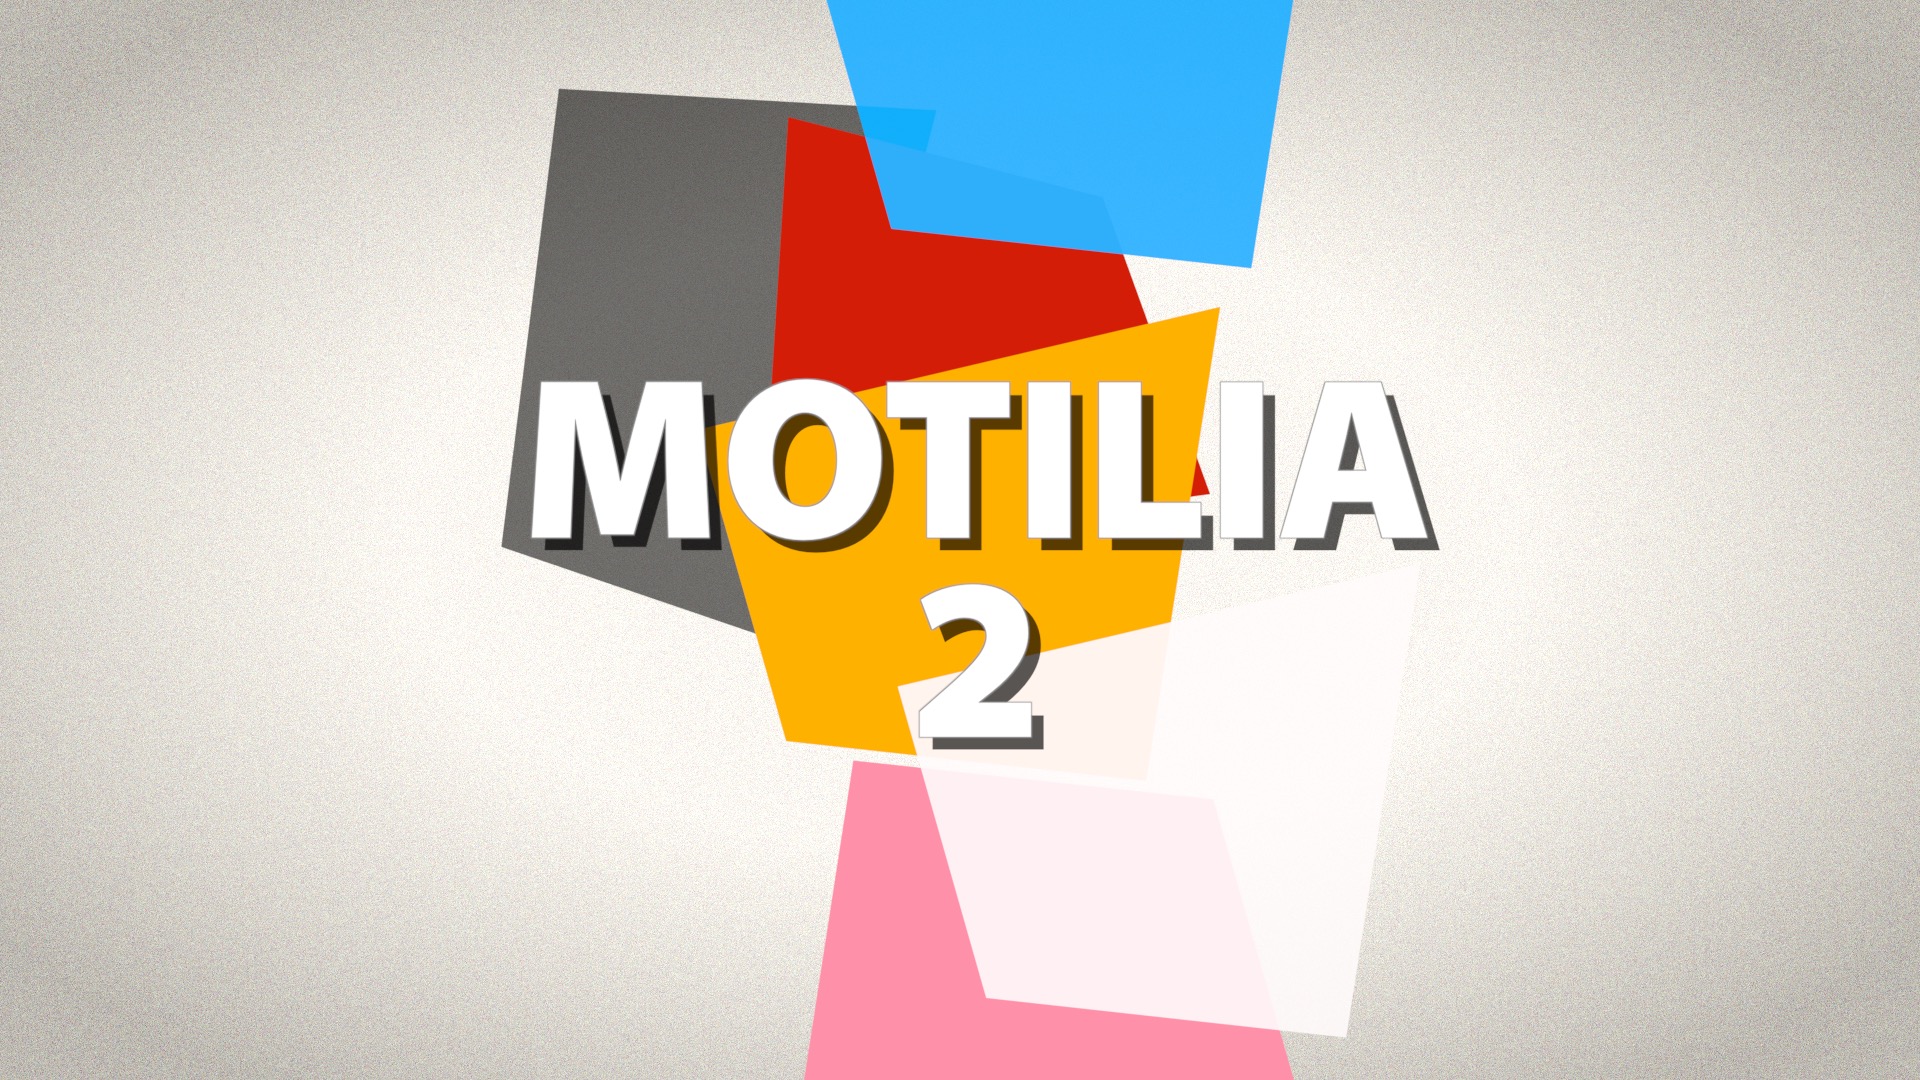 Motilia 2